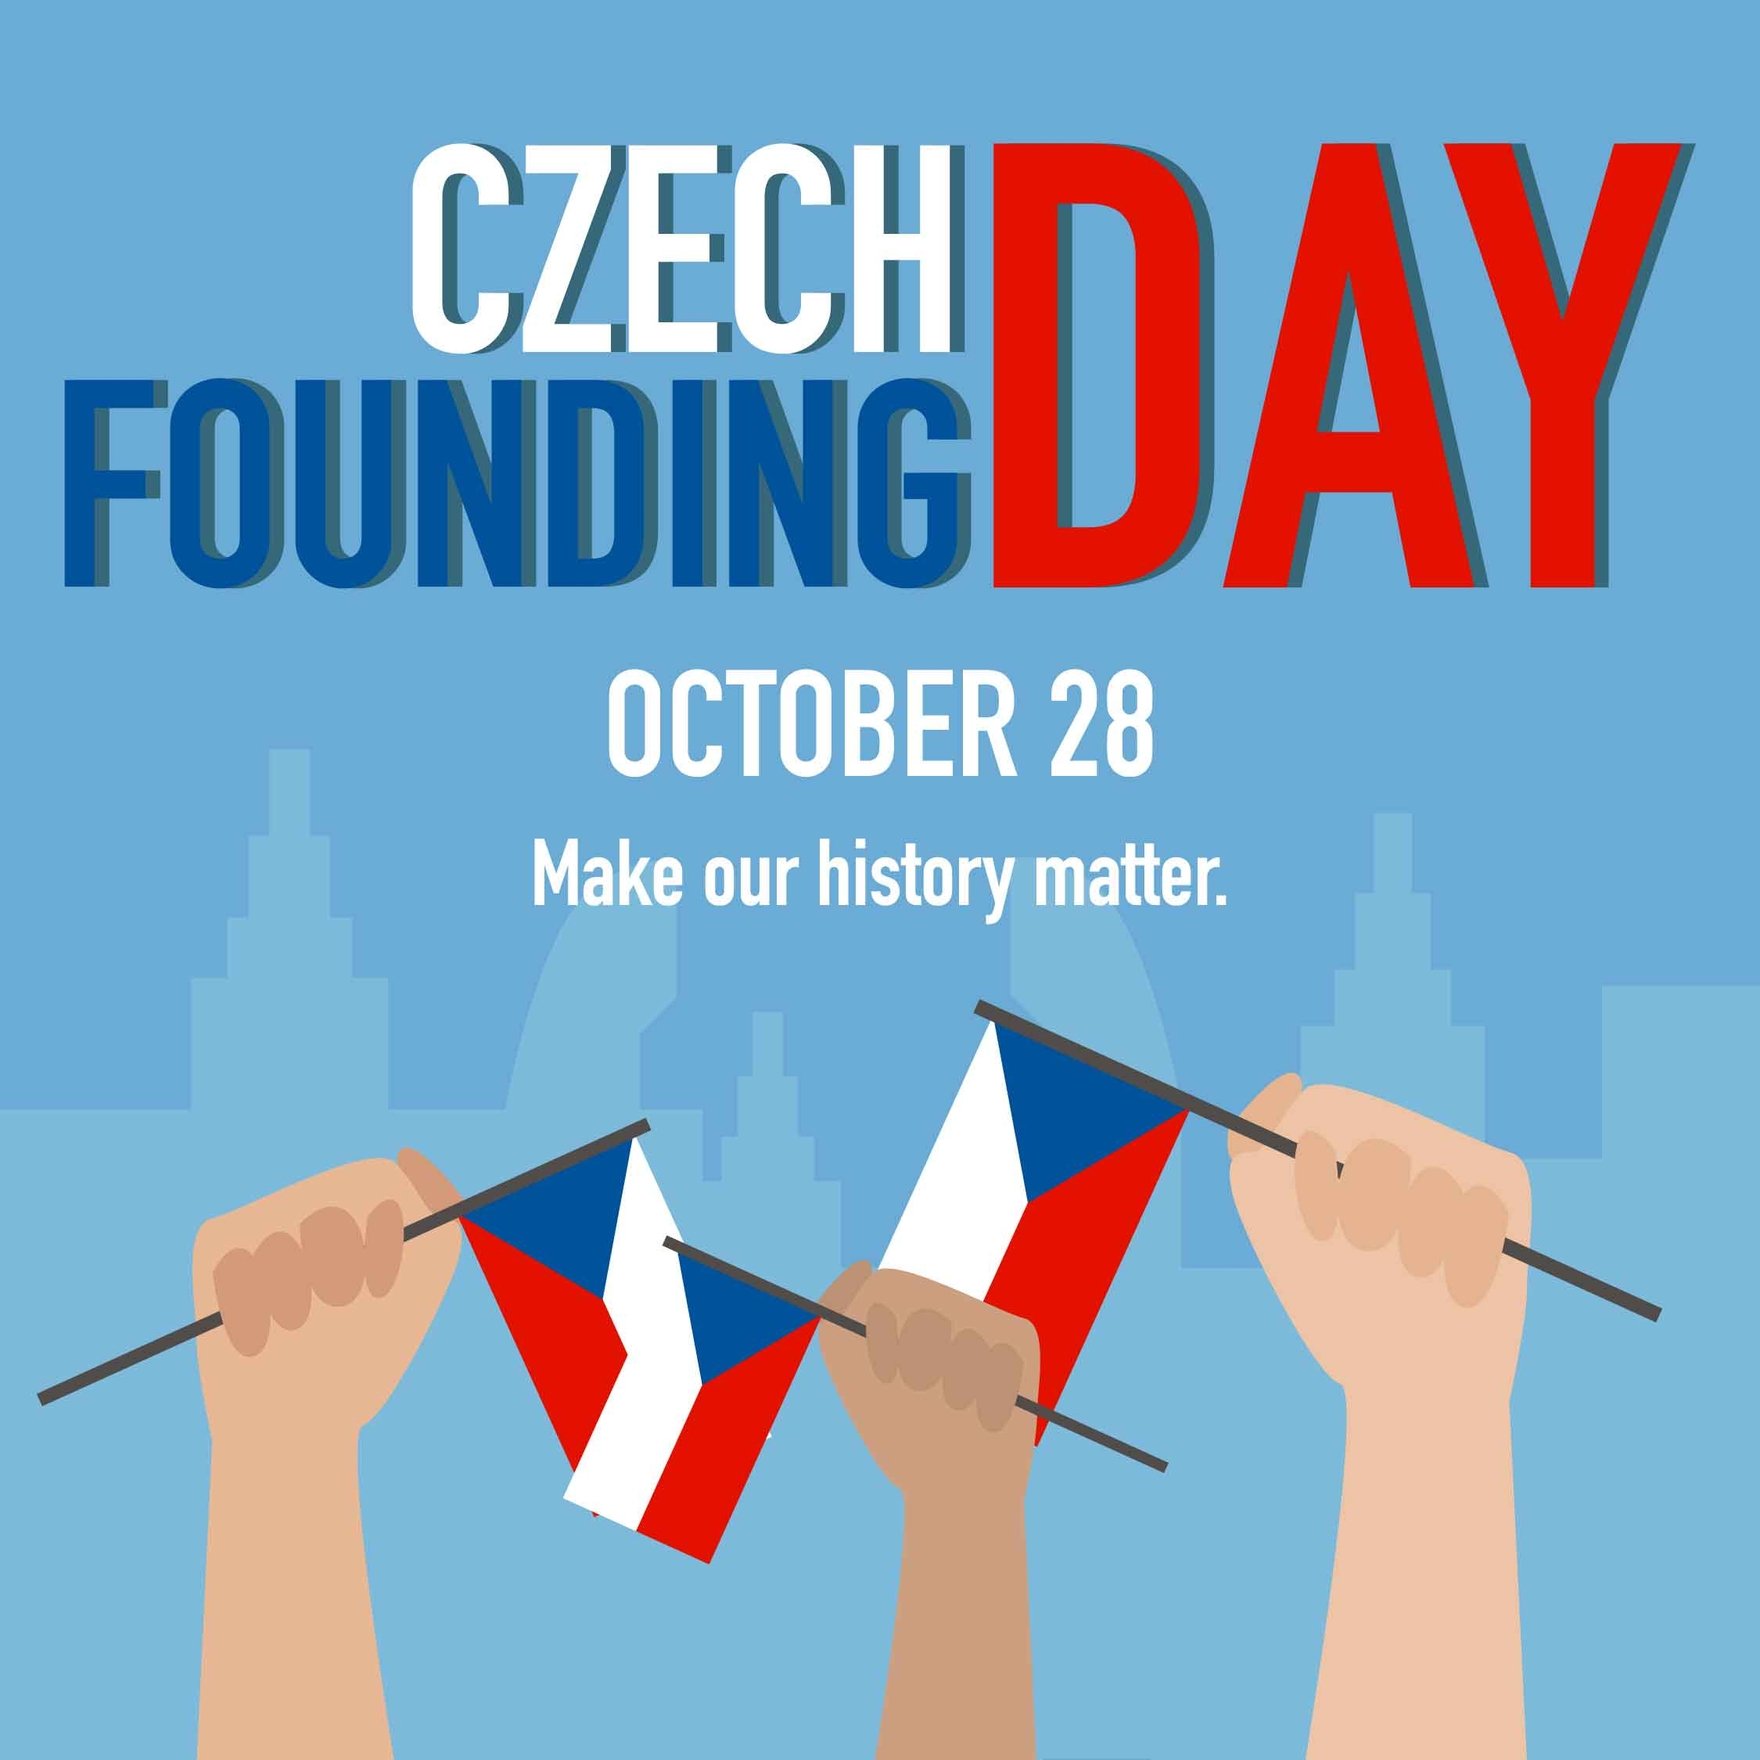 Czech Founding Day FB Post in Illustrator, PSD, EPS, SVG, JPG, PNG